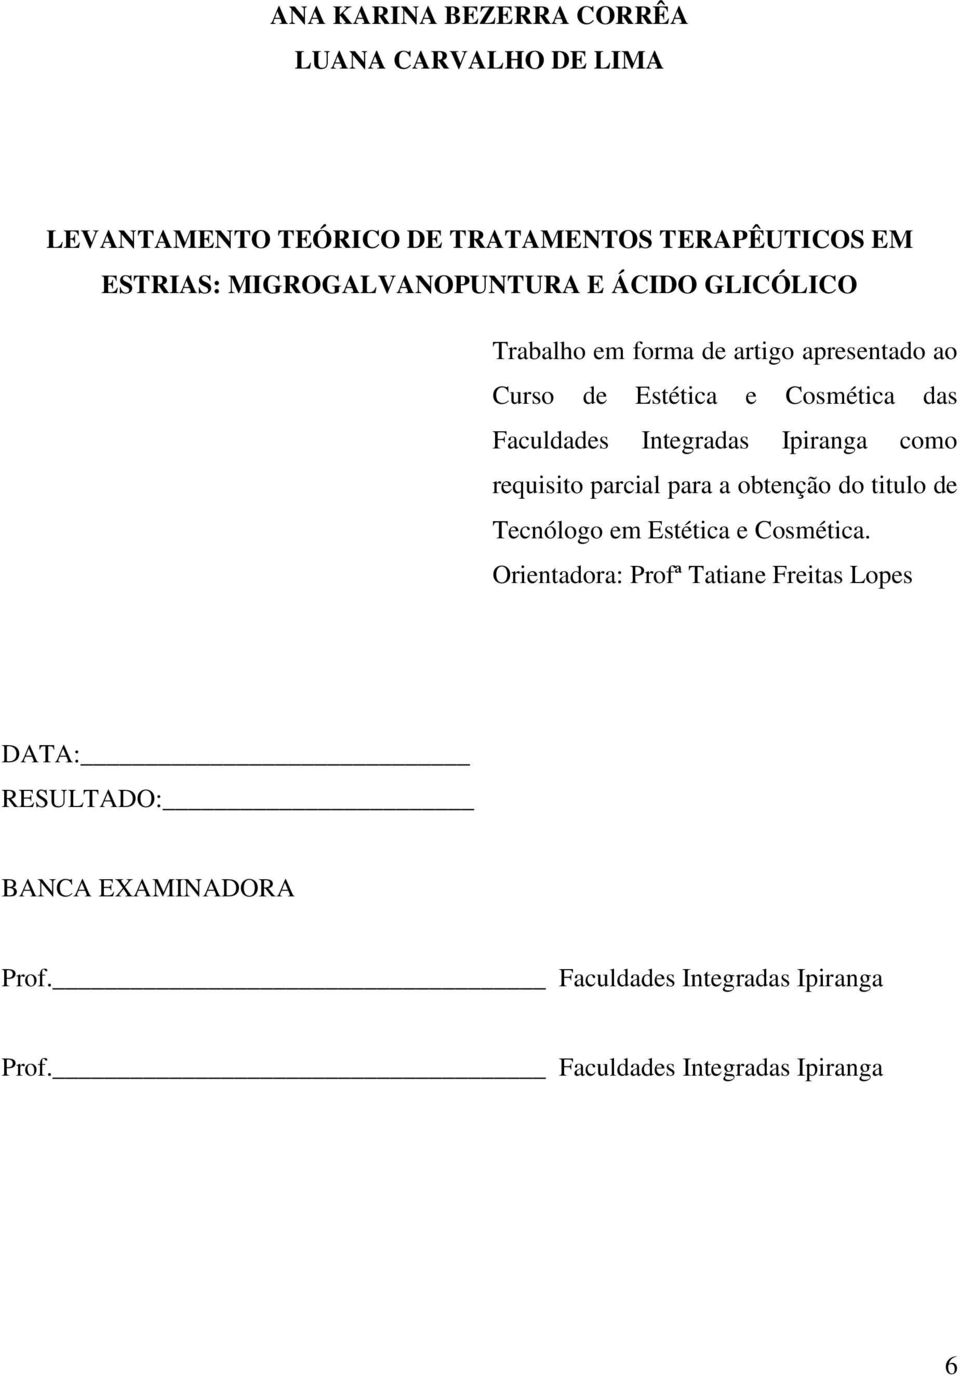 Faculdades Integradas Ipiranga como requisito parcial para a obtenção do titulo de Tecnólogo em Estética e Cosmética.